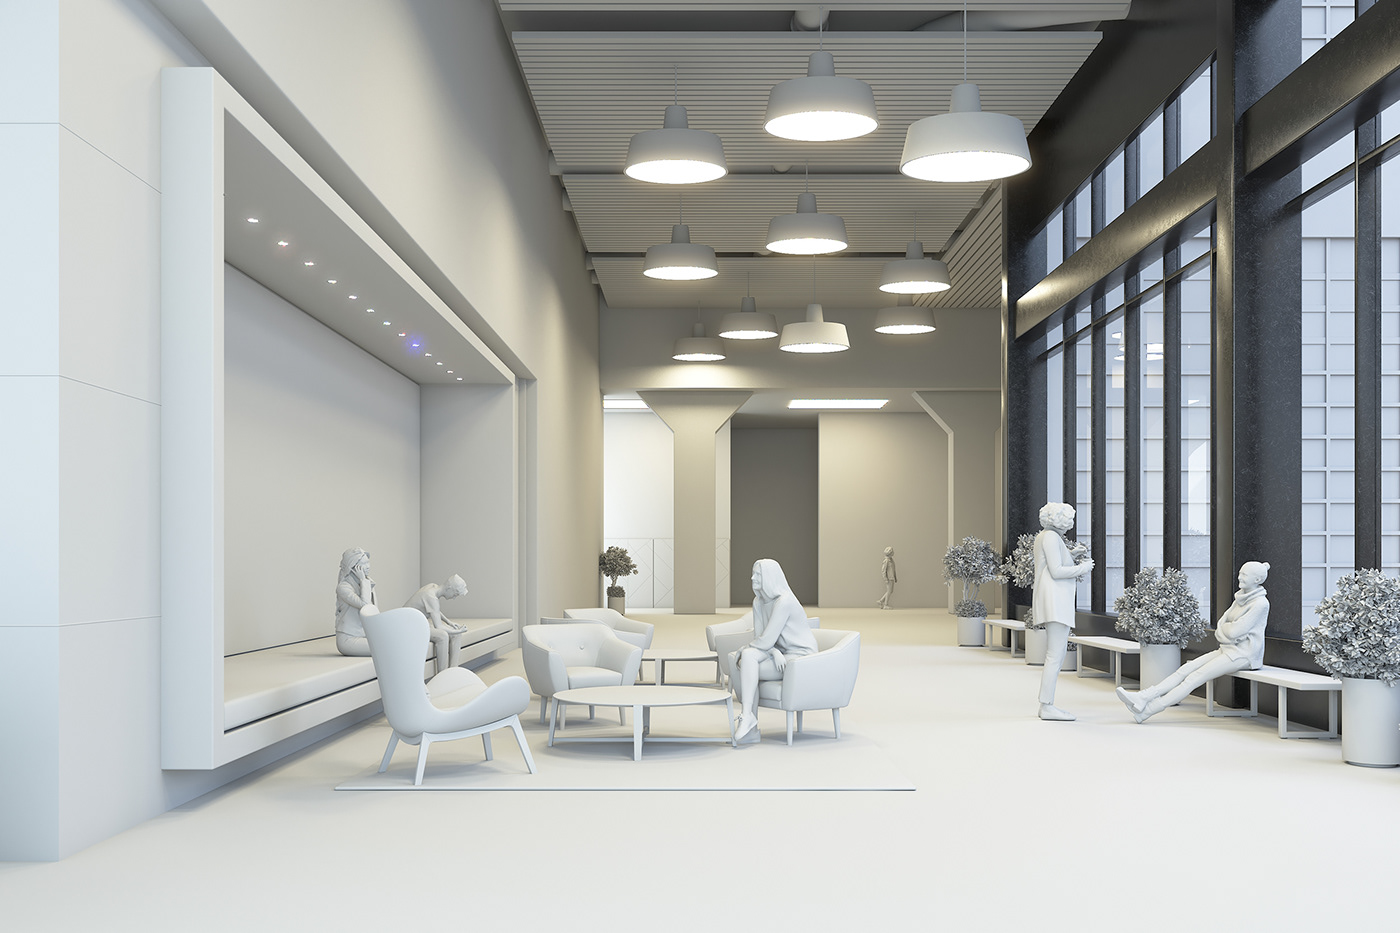 3D 3ds max architecture archviz CGI interior design  modern Render visualization vray